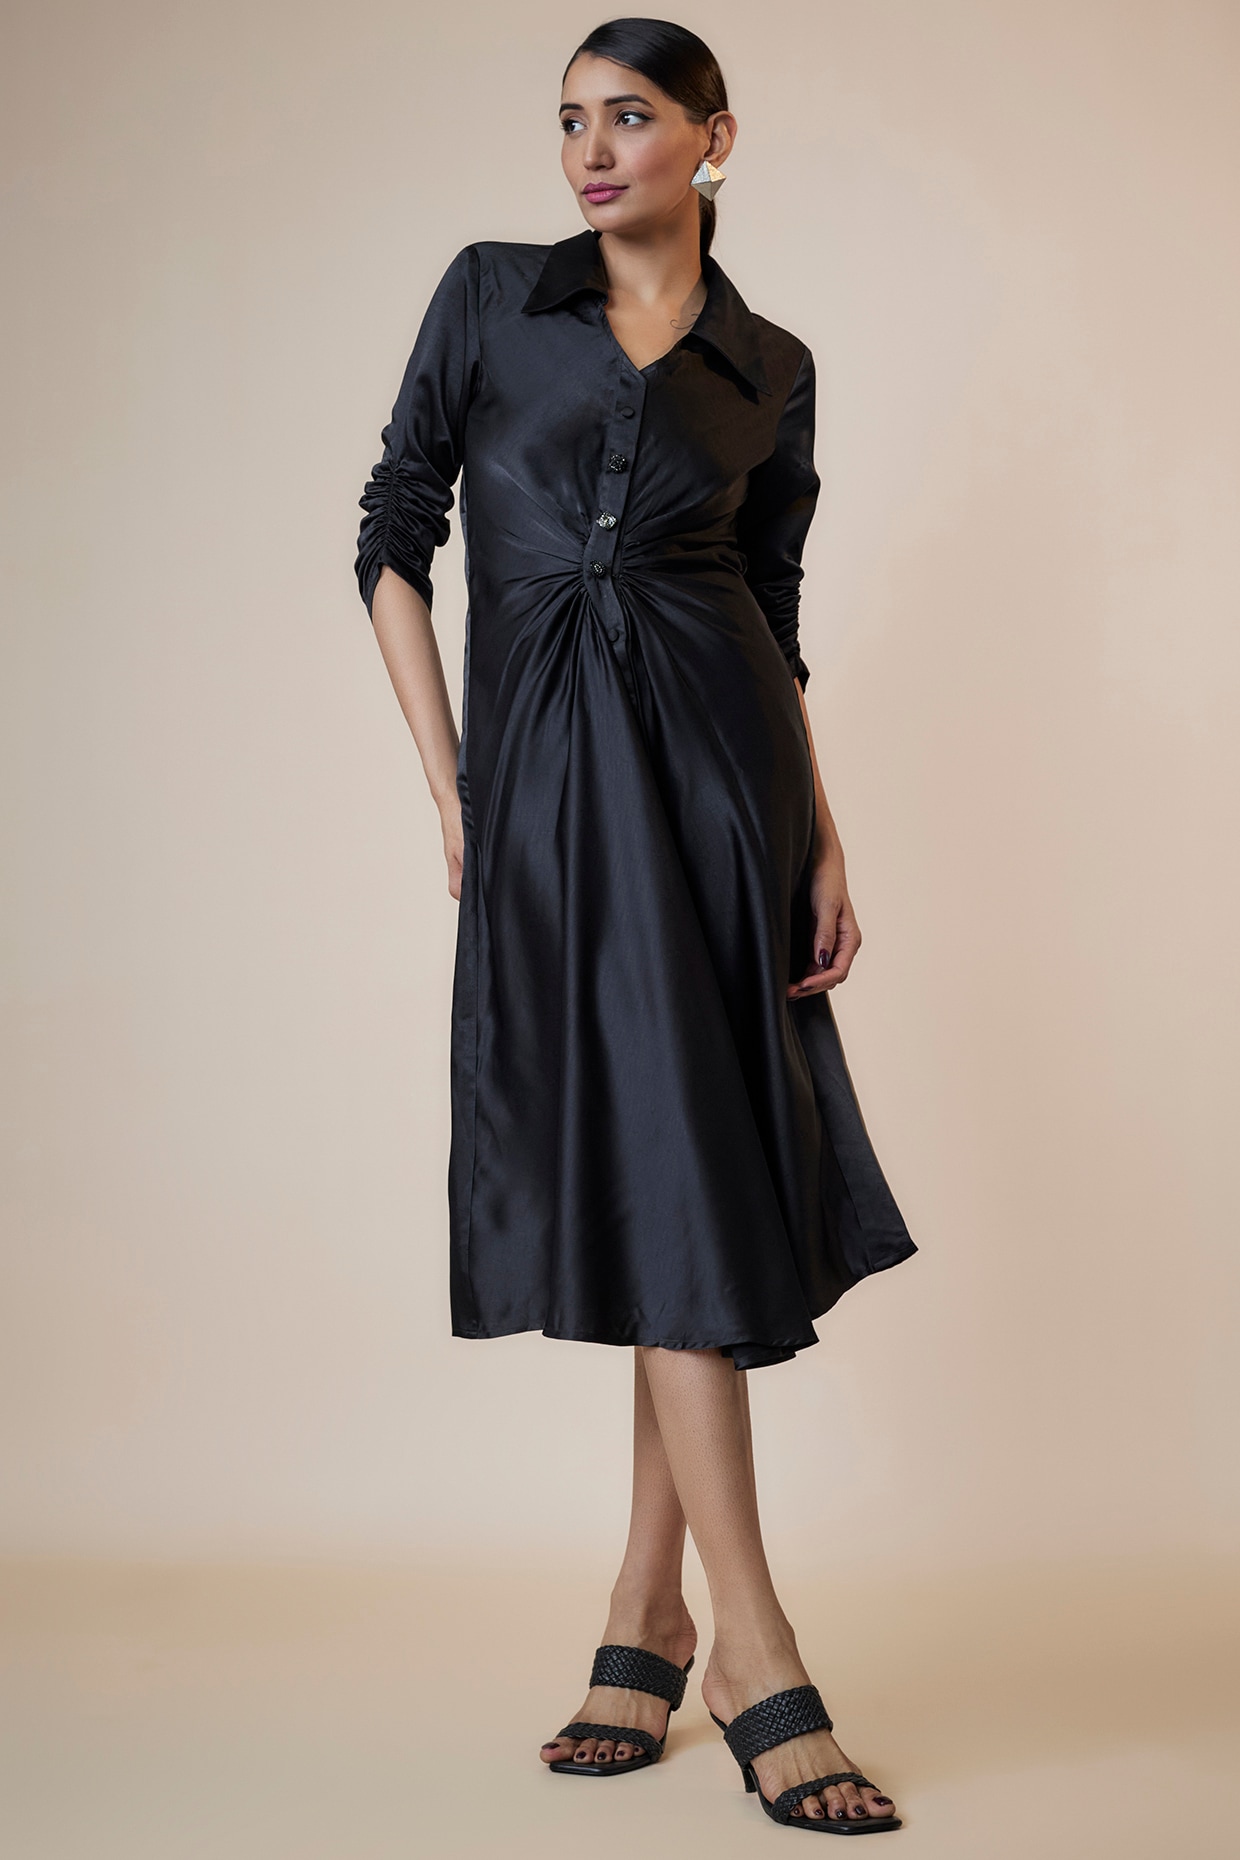 Black Midi Sheath Dress | Plus Size Dresses – Jolie Vaughan Mature Women's  Online Clothing Boutique